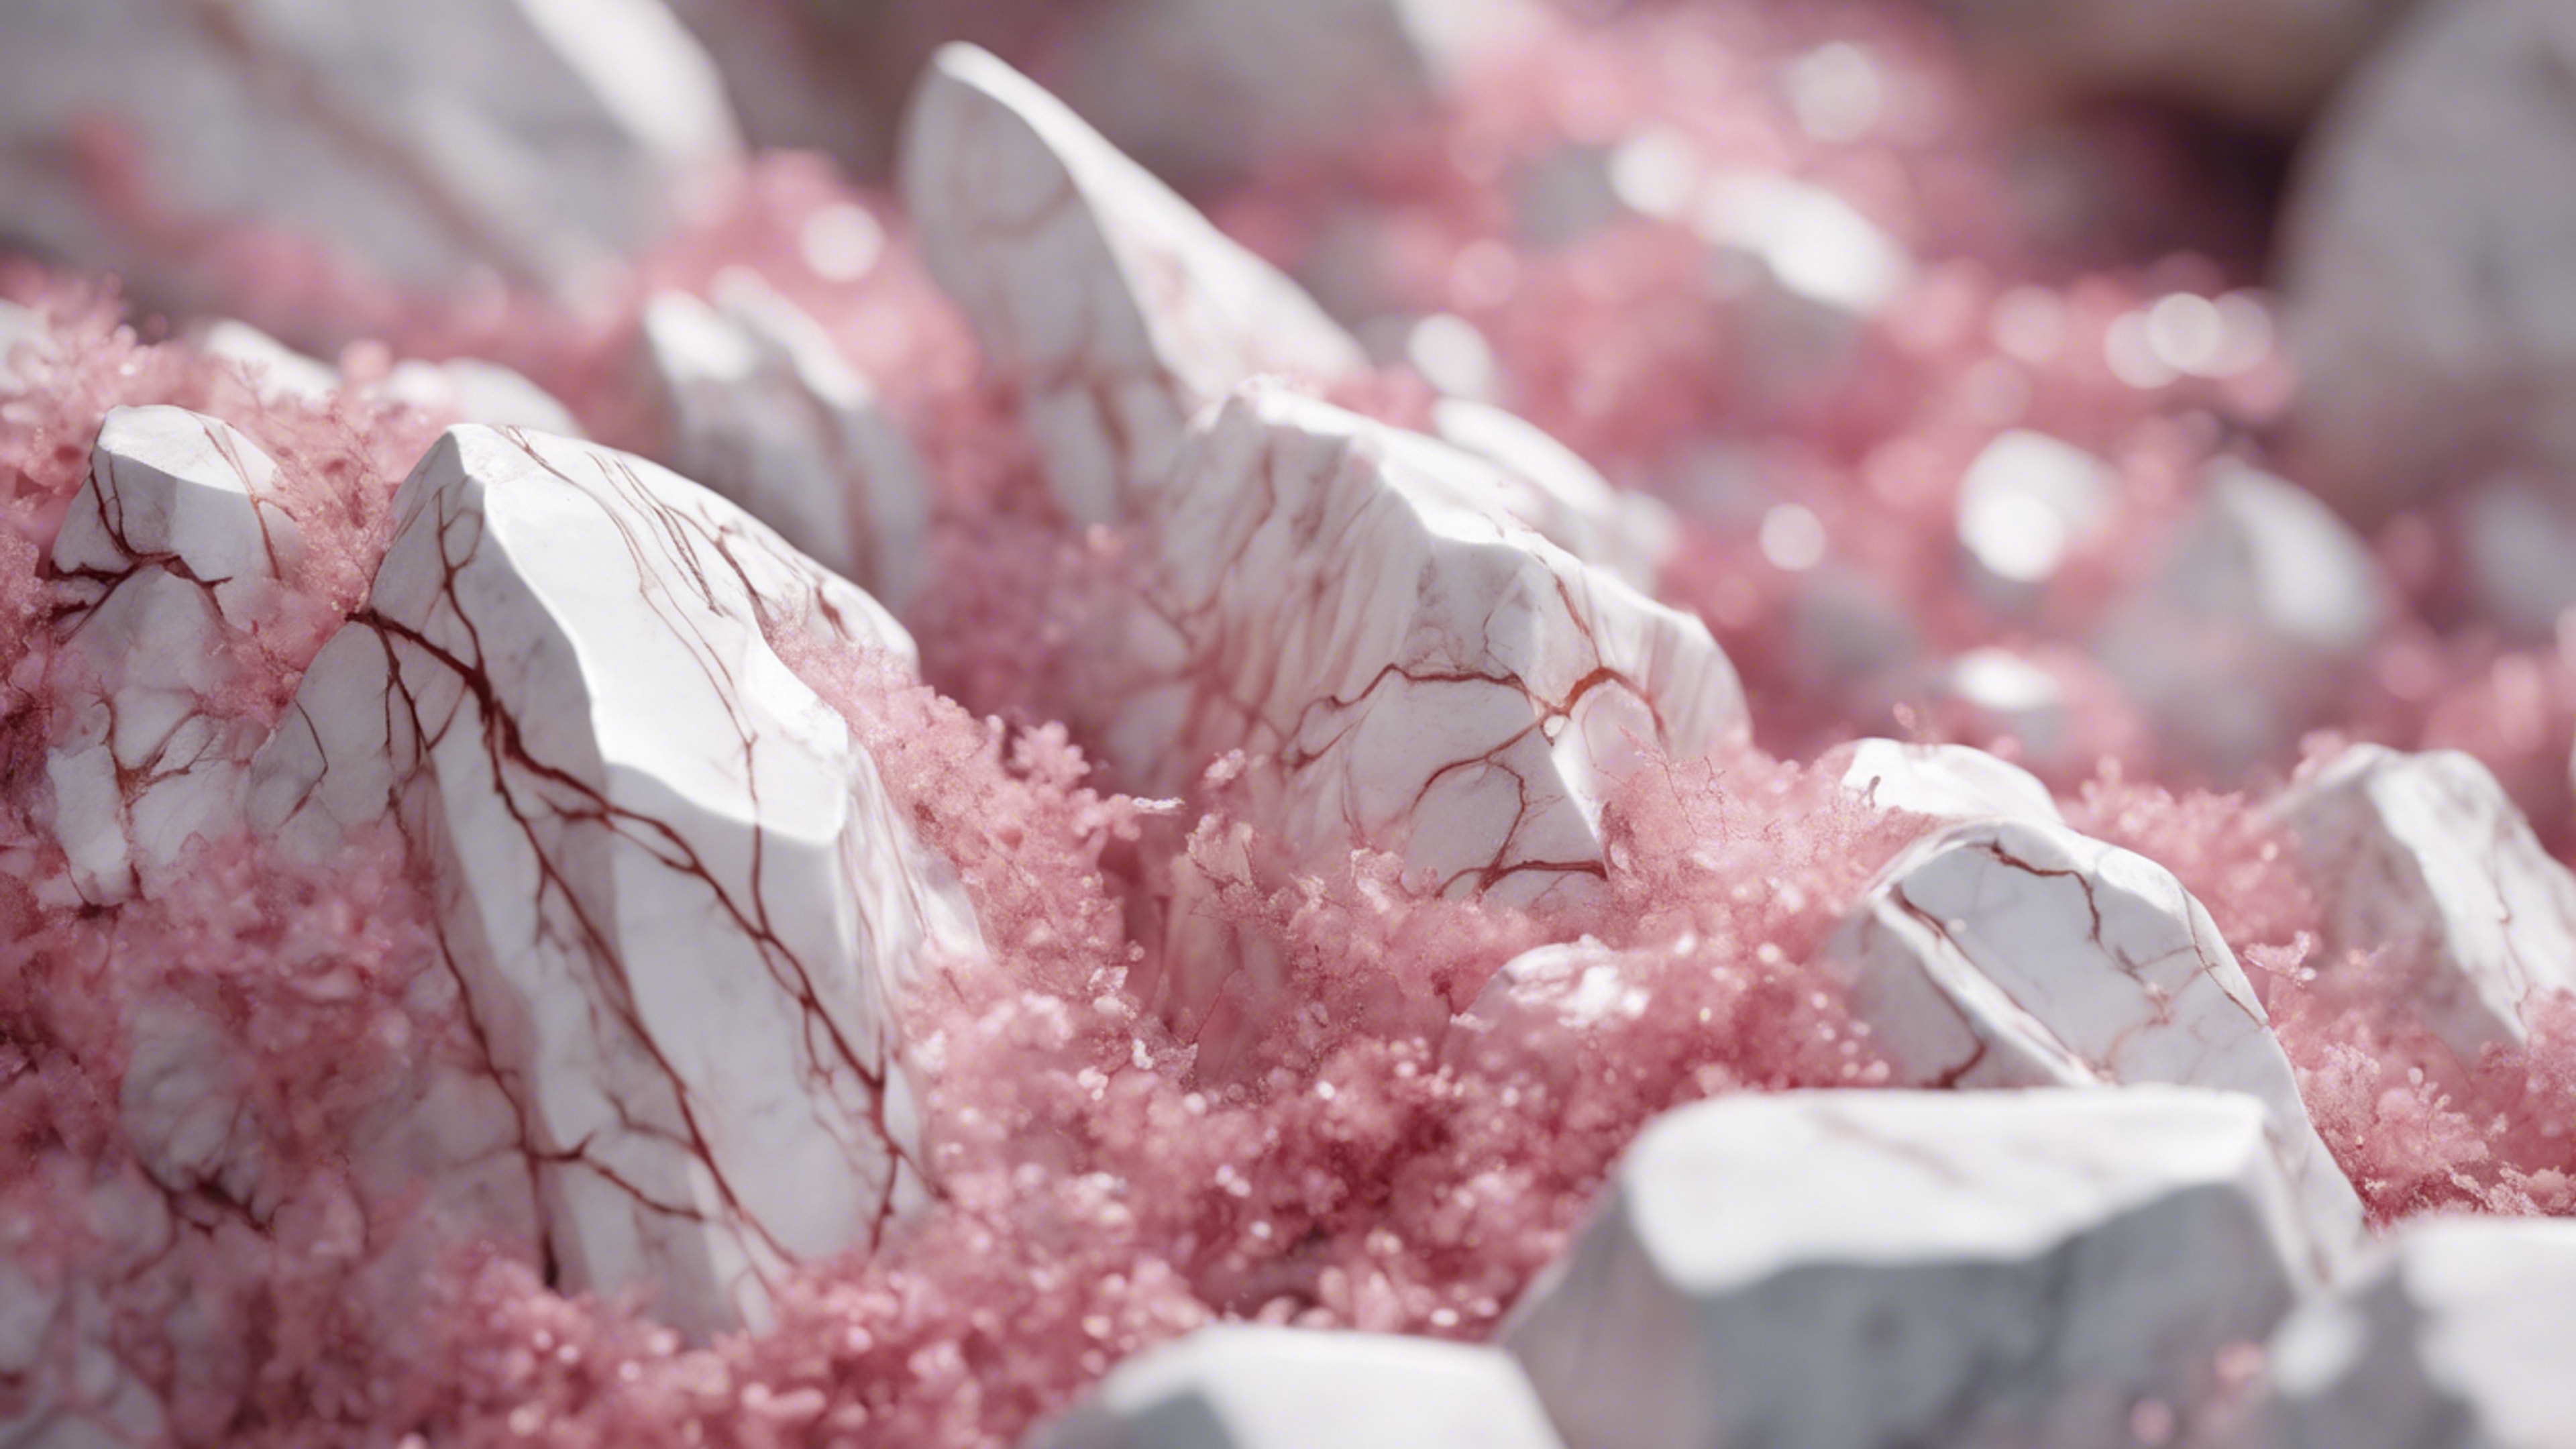 Pink and white veins running through marble rocks. Sfondo[3dd5ab4ab8a944e2820c]